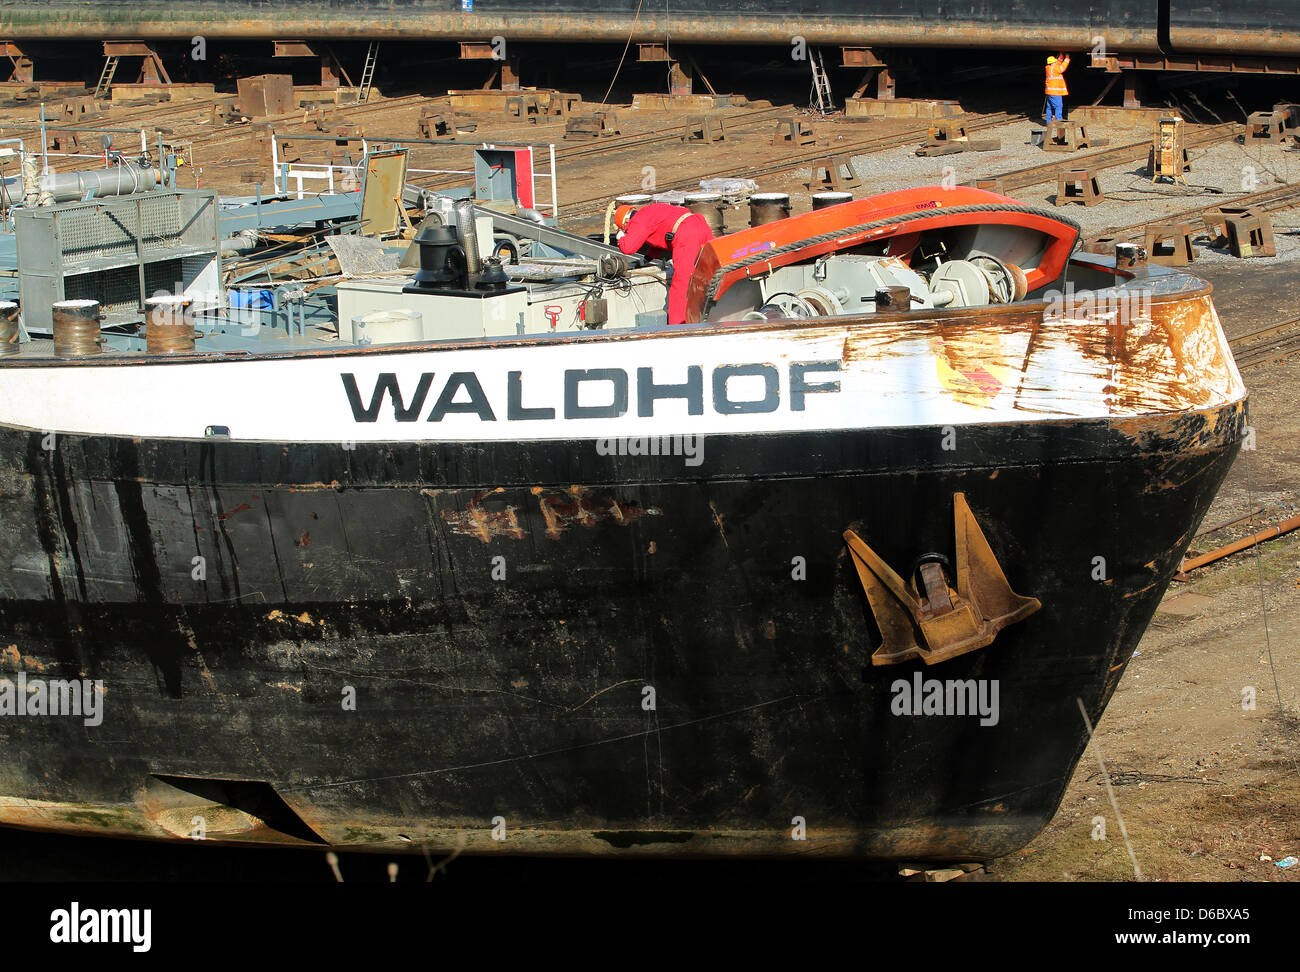 Der vor Wochen gekenterte Säuretanker "Waldhof" ist am Dienstag (22.02.2011) im Duisburger Hafen bei der Triton Schiffswerft auf die Helling gedockt worden.Hier wird das Schiff von der Staatsanwaltschaft Koblenz sowie Experten und Gutachtern untersucht.  Foto: Roland Weihrauch dpa/lnw Stock Photo